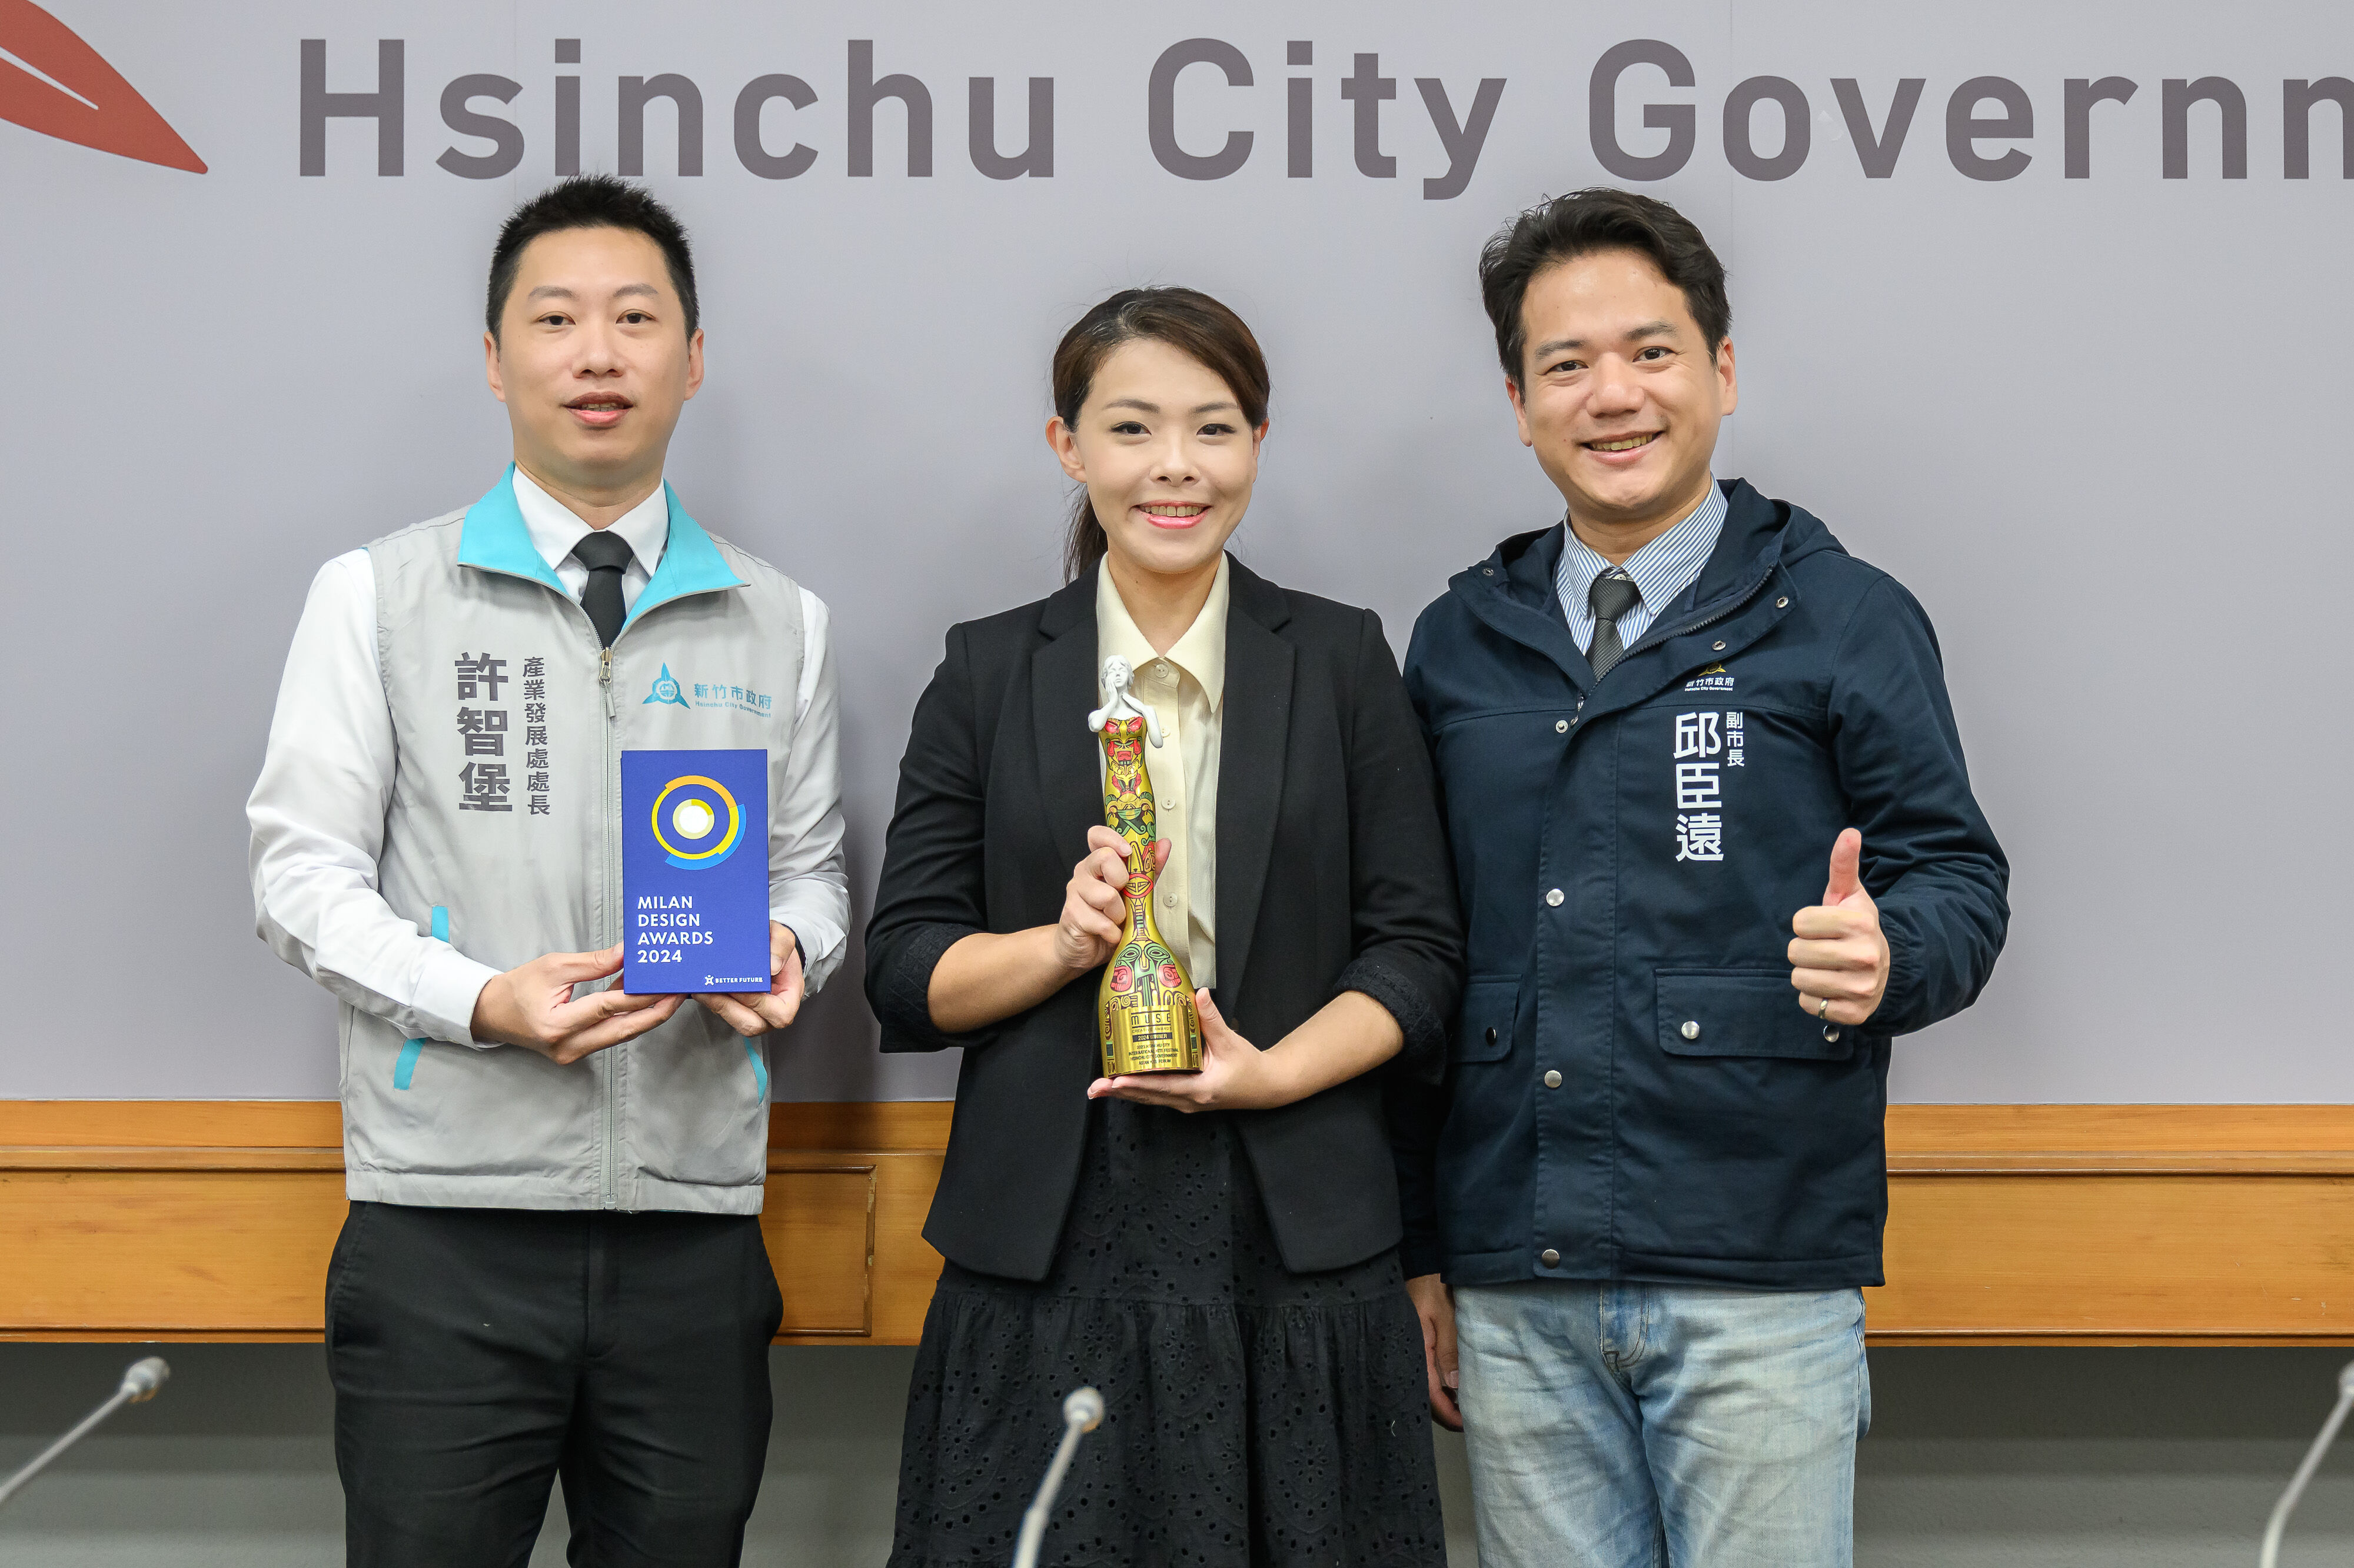 2023新竹市國際風箏節首度獲頒「米蘭設計大獎-銀獎」及「美國繆思大獎-金獎」2大獎殊榮，高市長表揚肯定市府團隊。